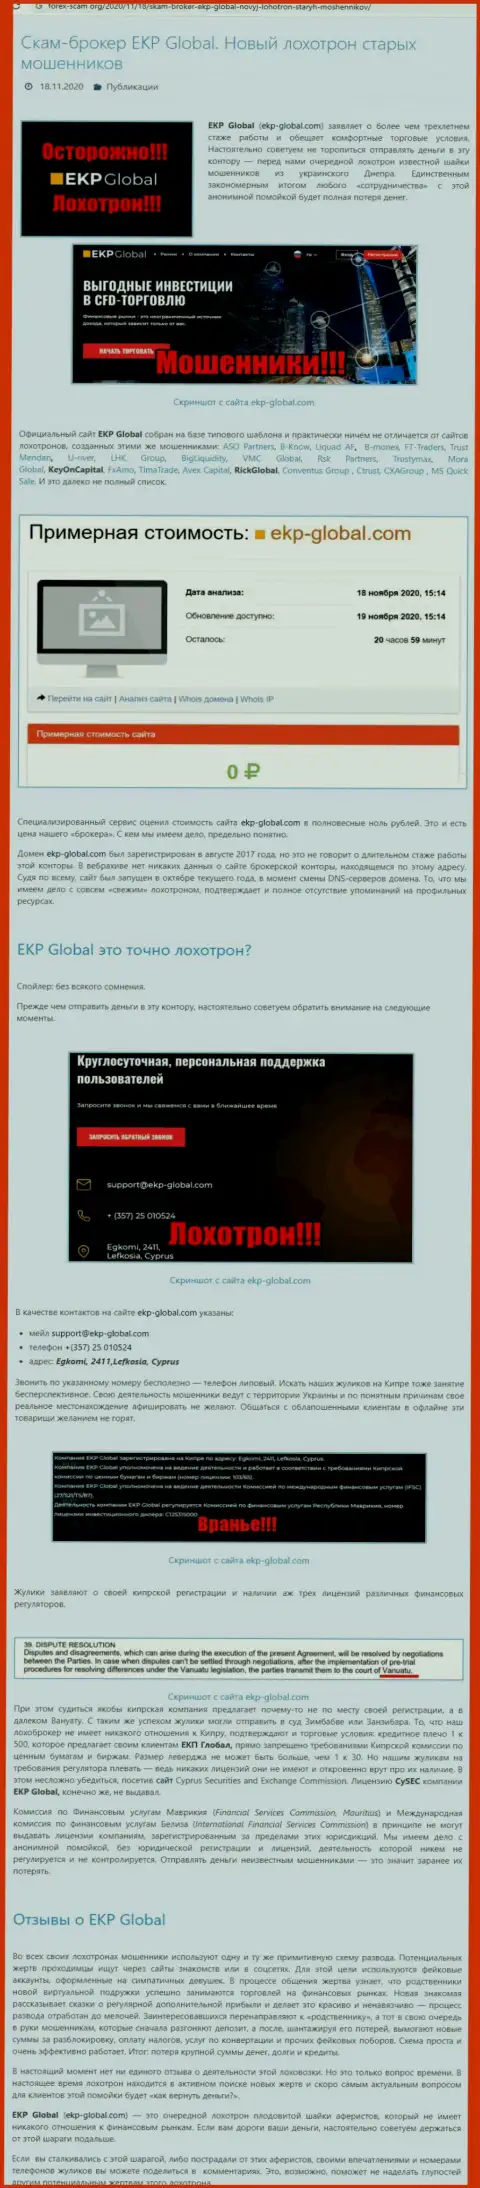 Из компании ЕКП-Глобал вывести финансовые вложения не получится - это обзор проделок internet мошенников